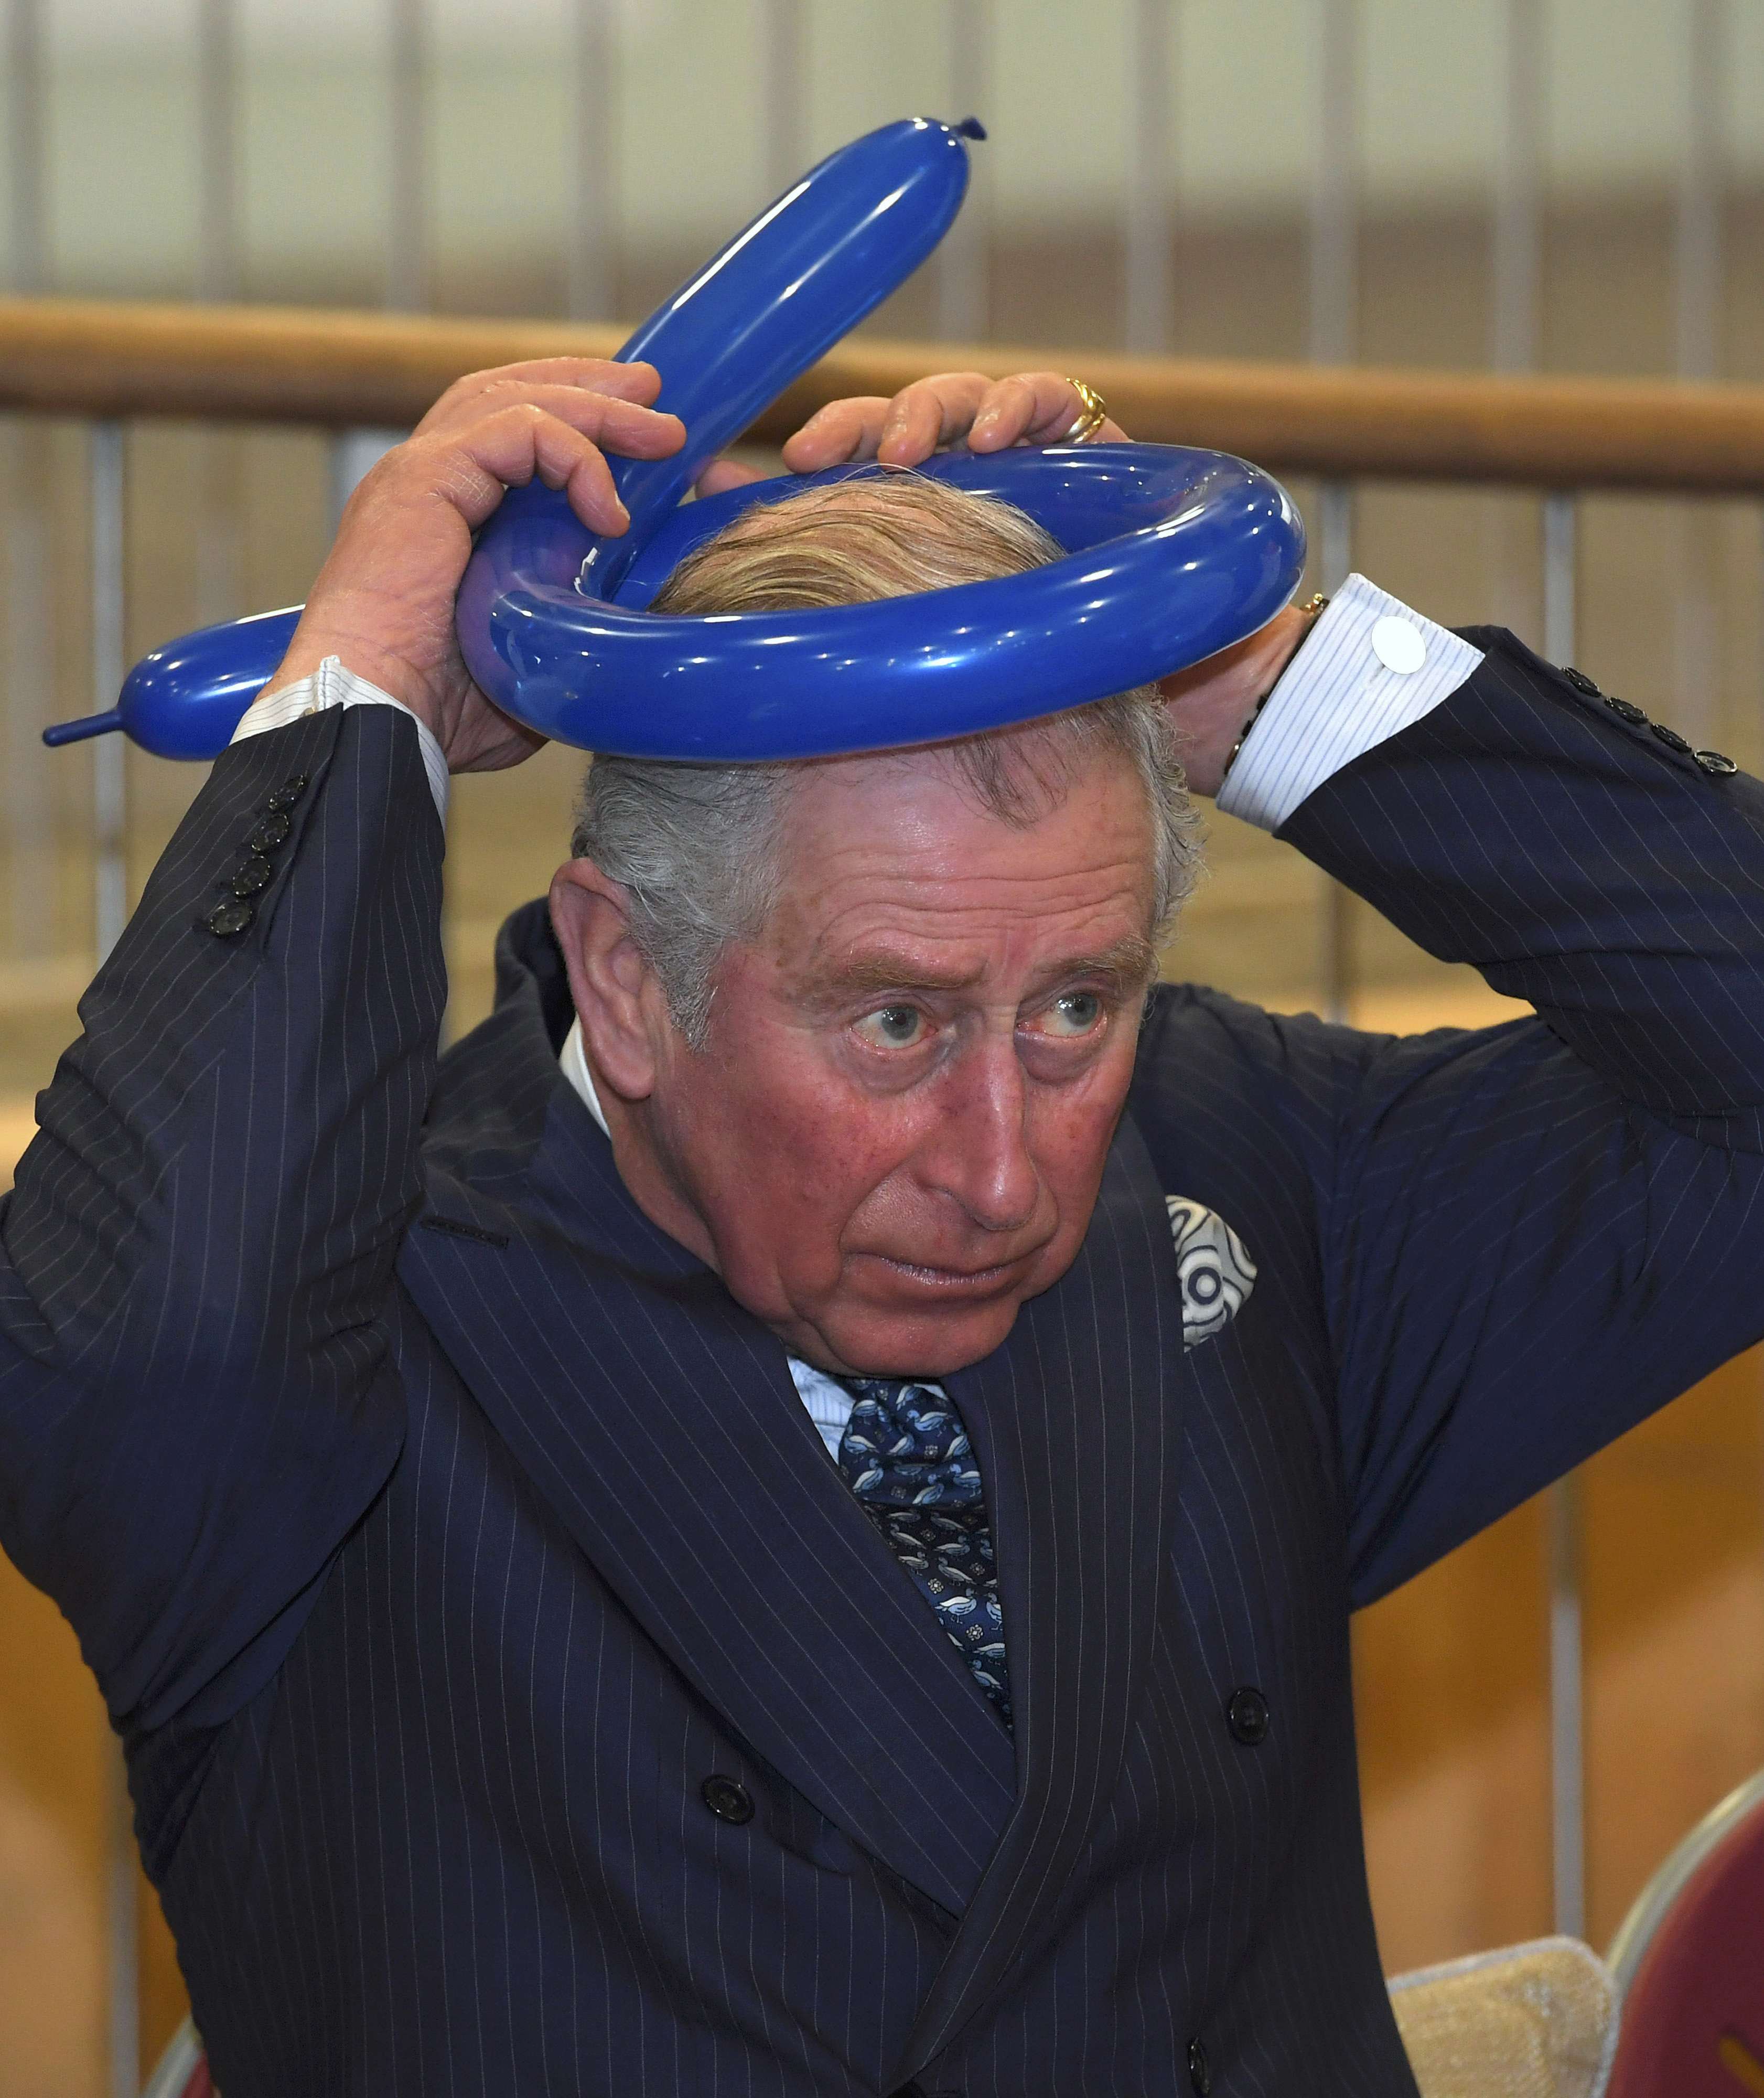 الأمير تشارلز يربط غطاء الرأس بالبالونة على رأسه فى زيارة لكلية يفنيه